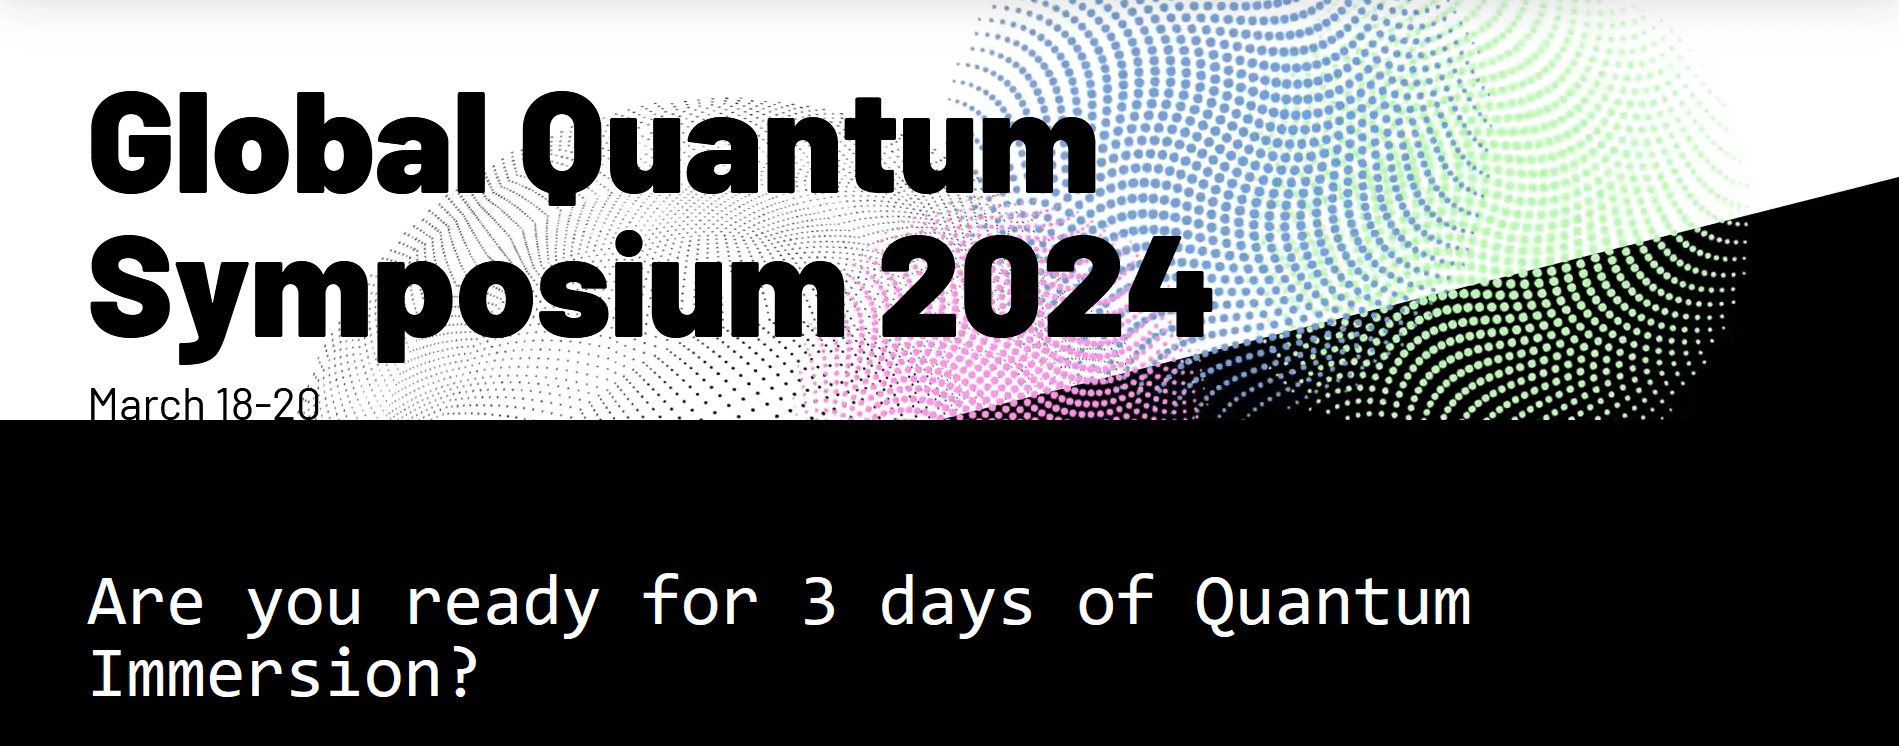 Global Quantum Symposium 2024